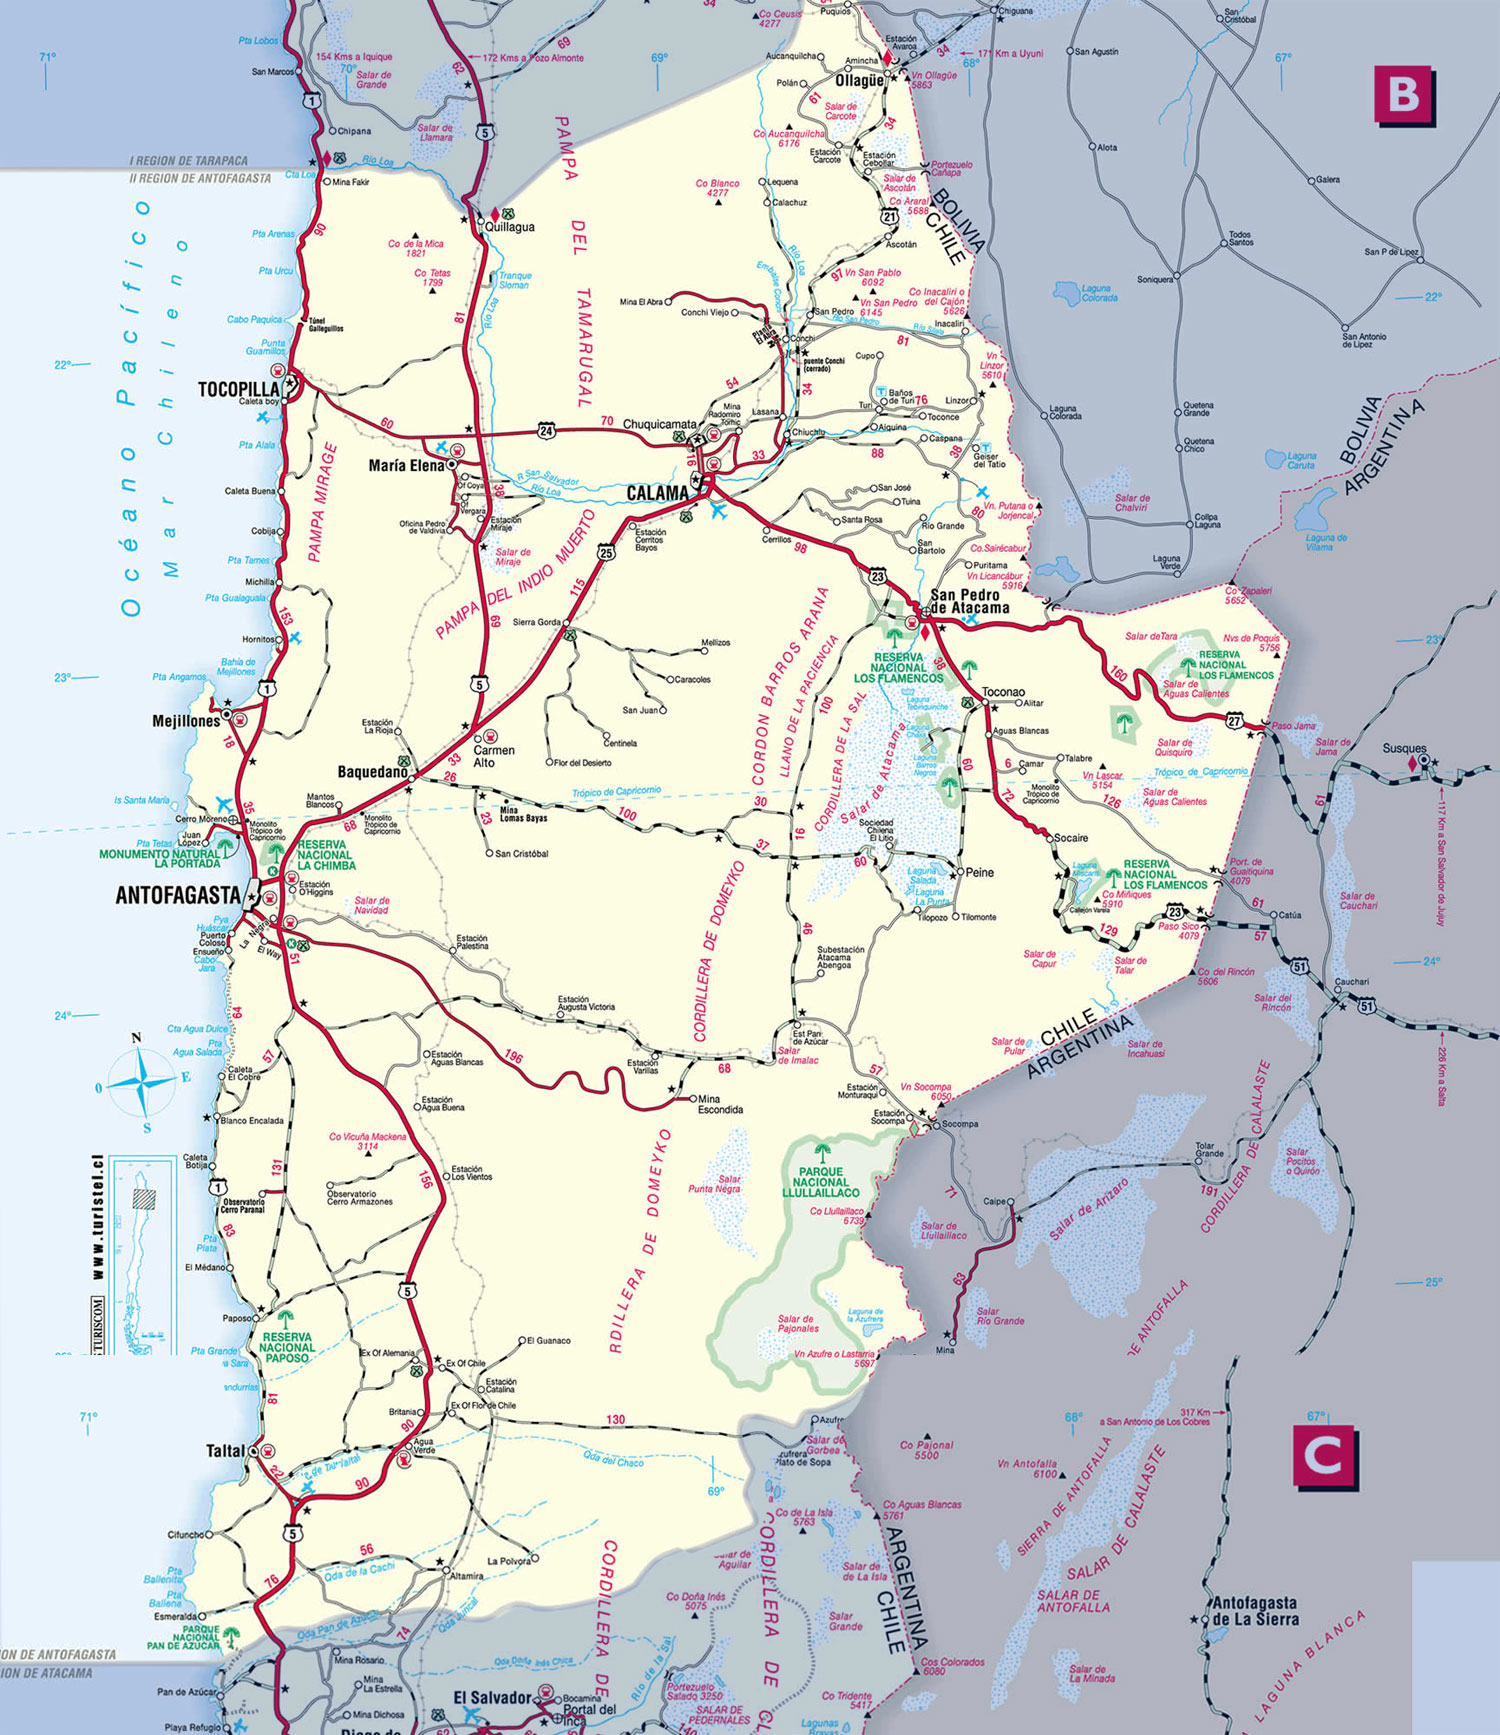 II region- Antofagasta-San Pedro